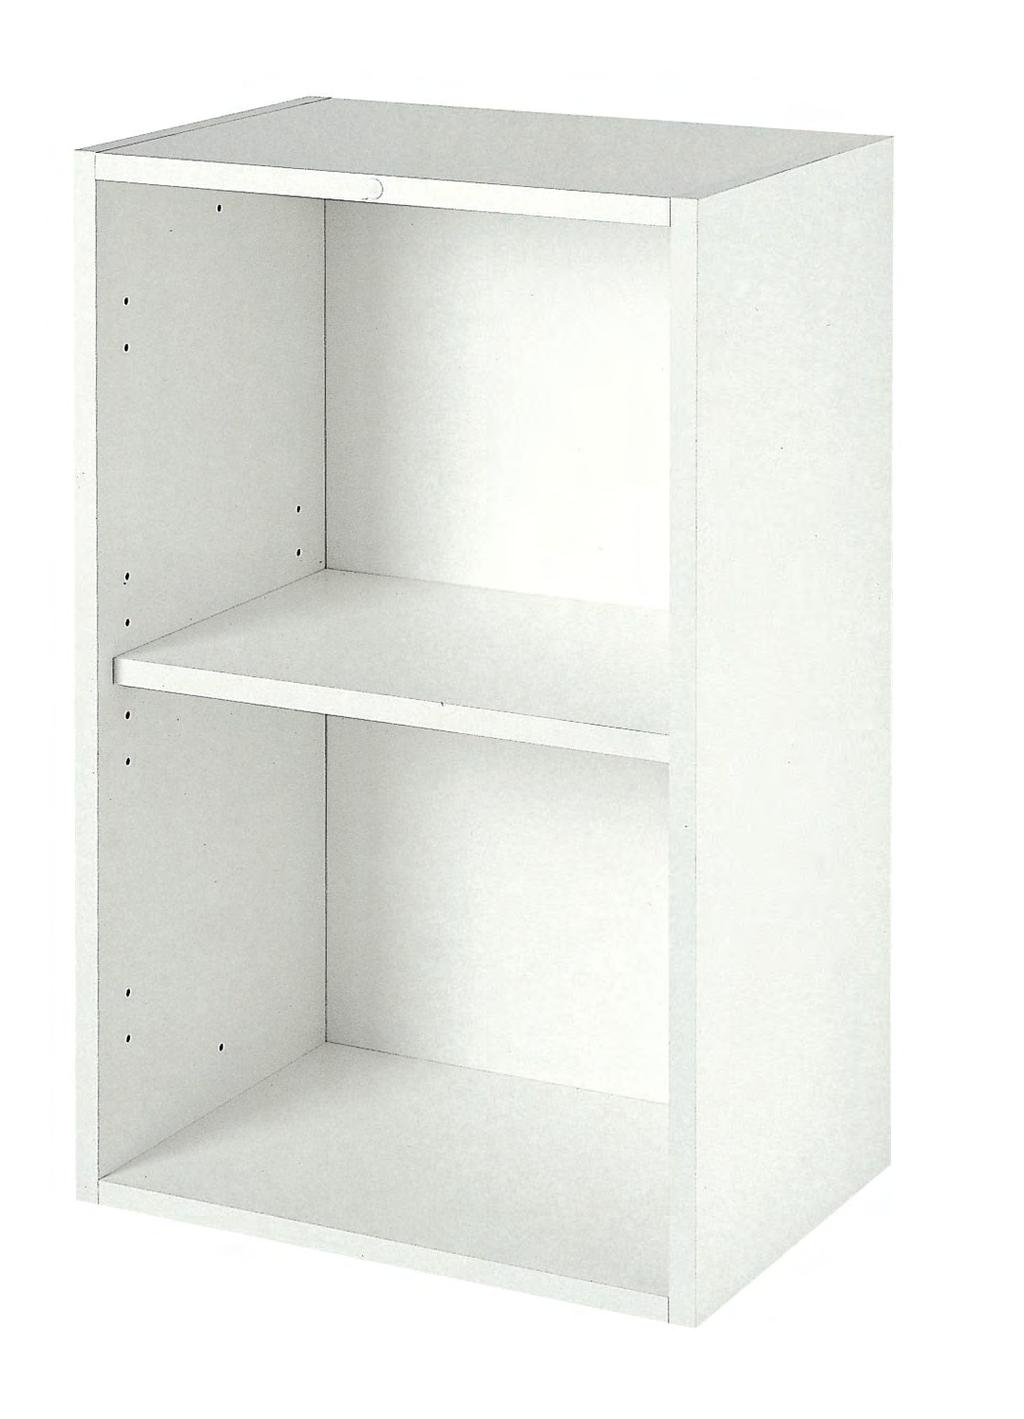 : per una corretta preventivazione ed ordine delle librerie, si consiglia l uso del programma 3cad Evolution The bookcase